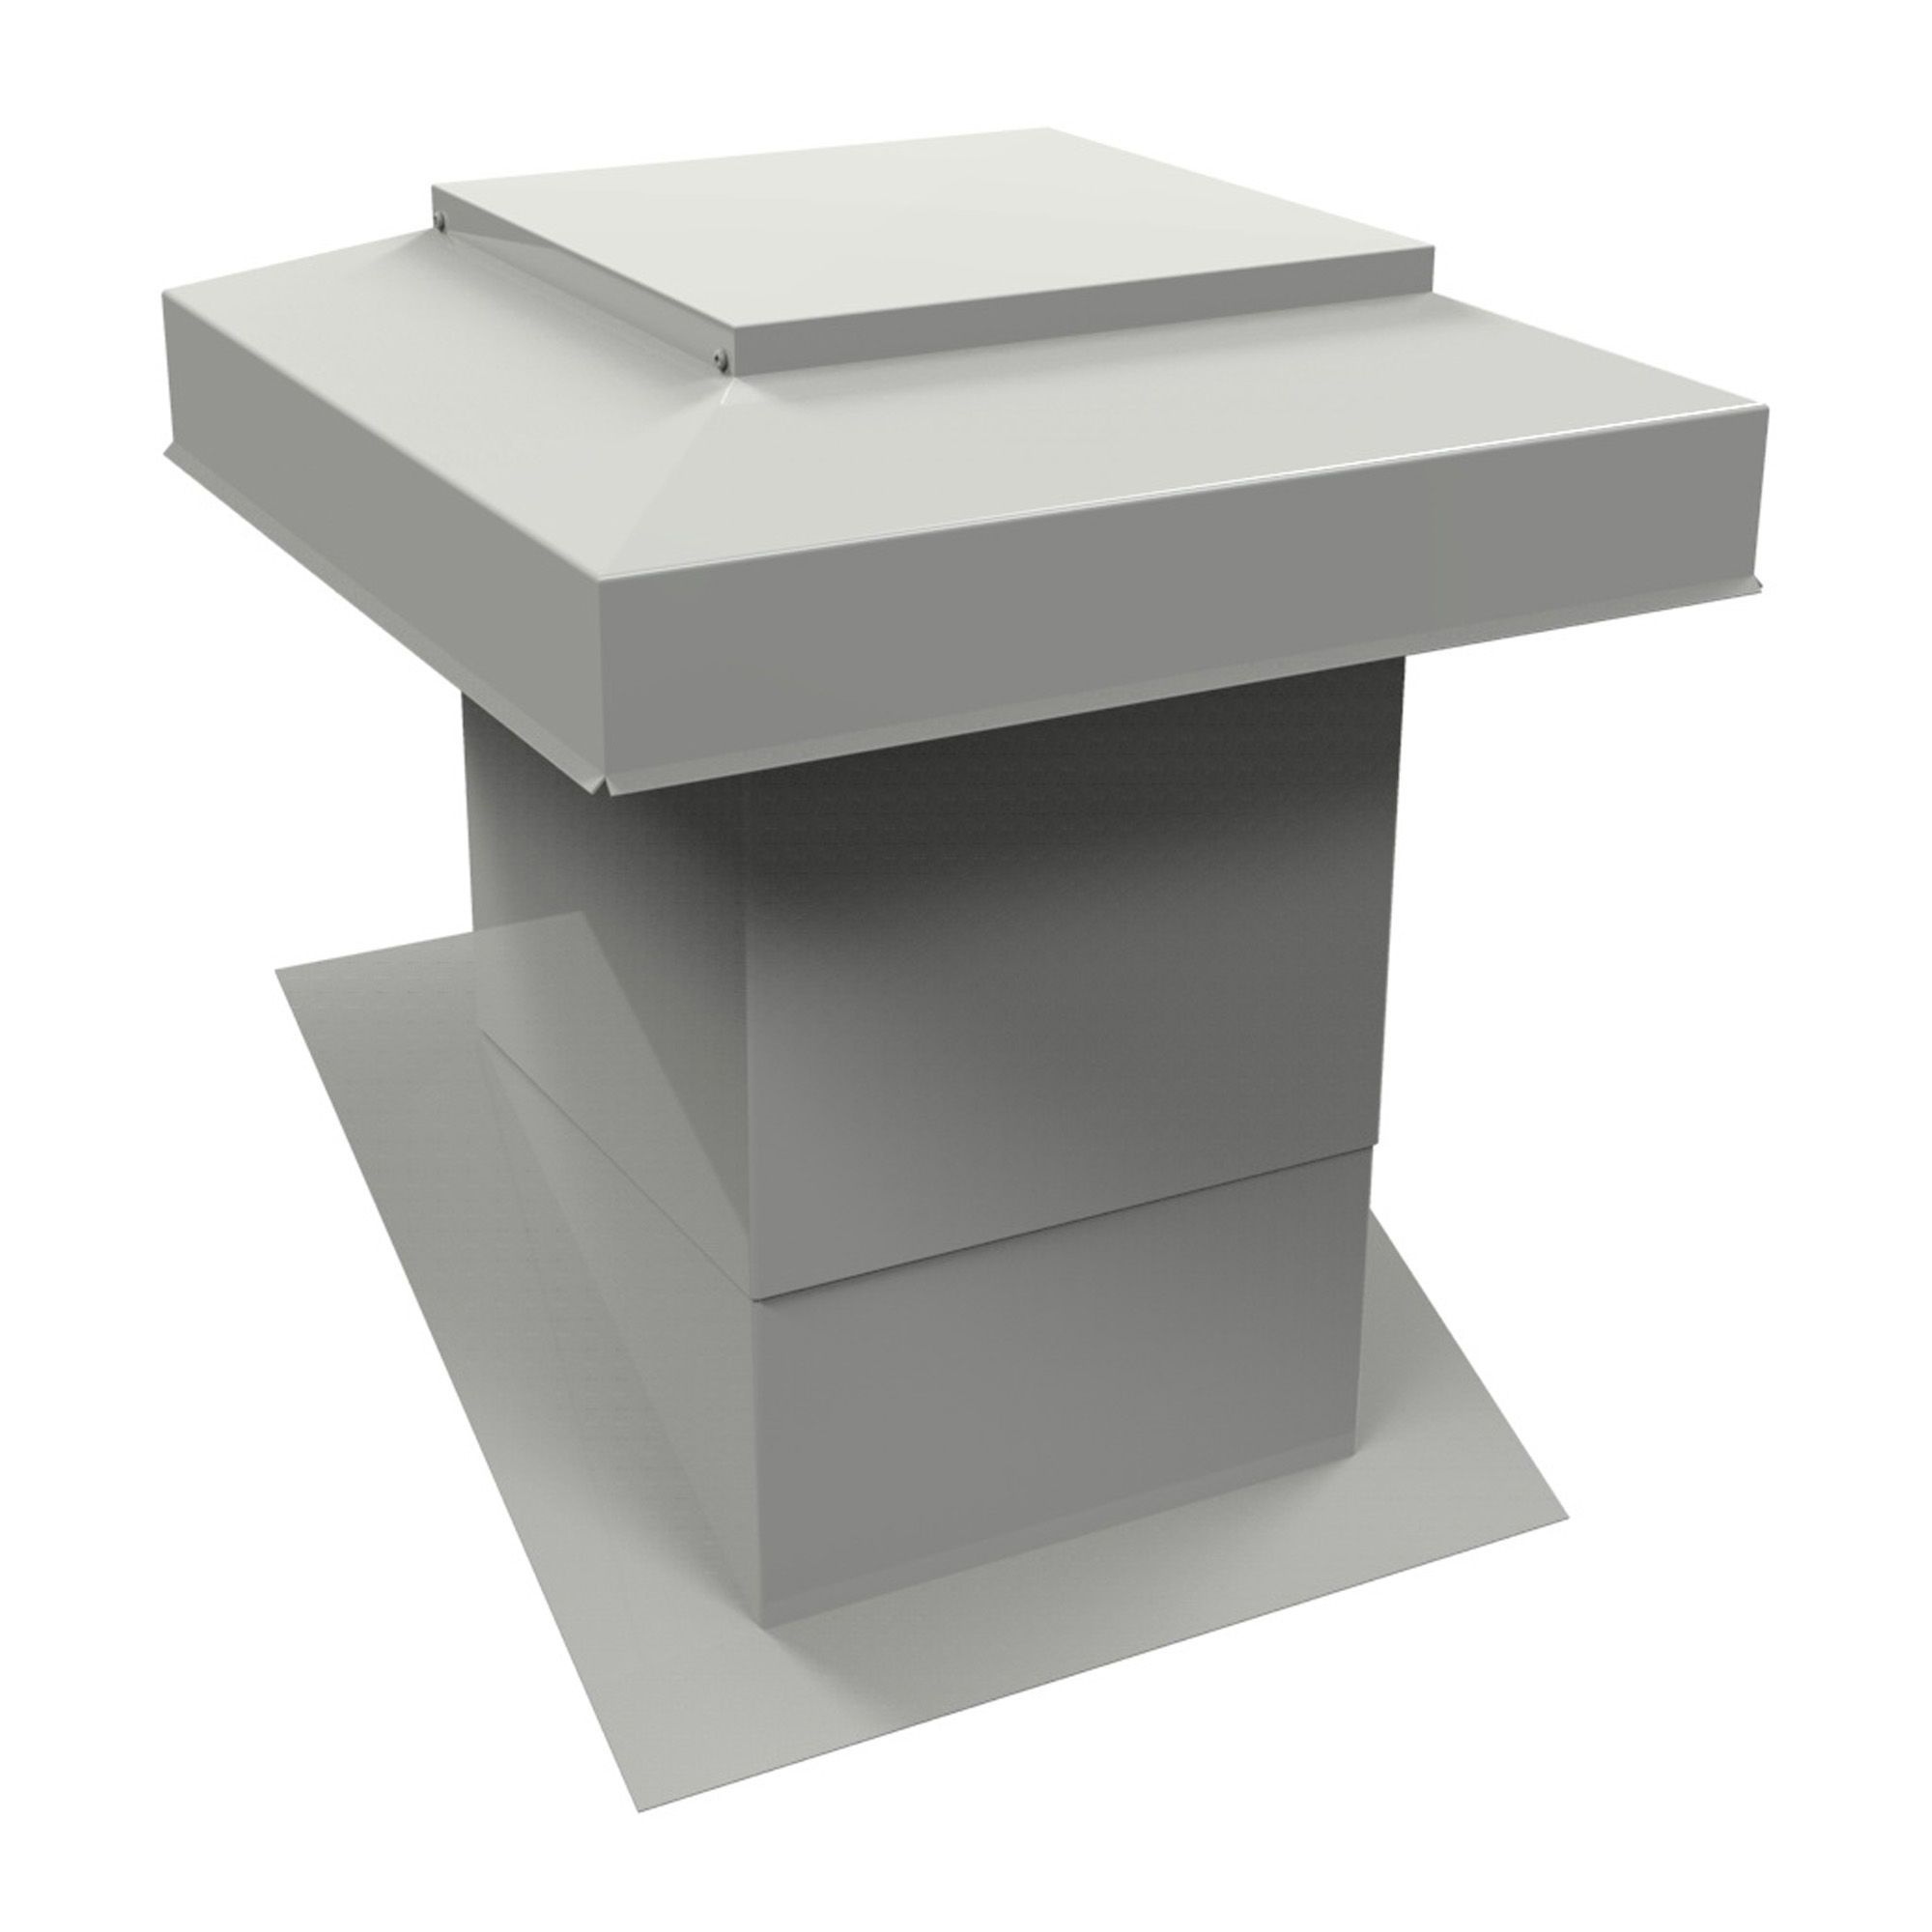 Ventilateur pour toit incliné VMAX 302, gris